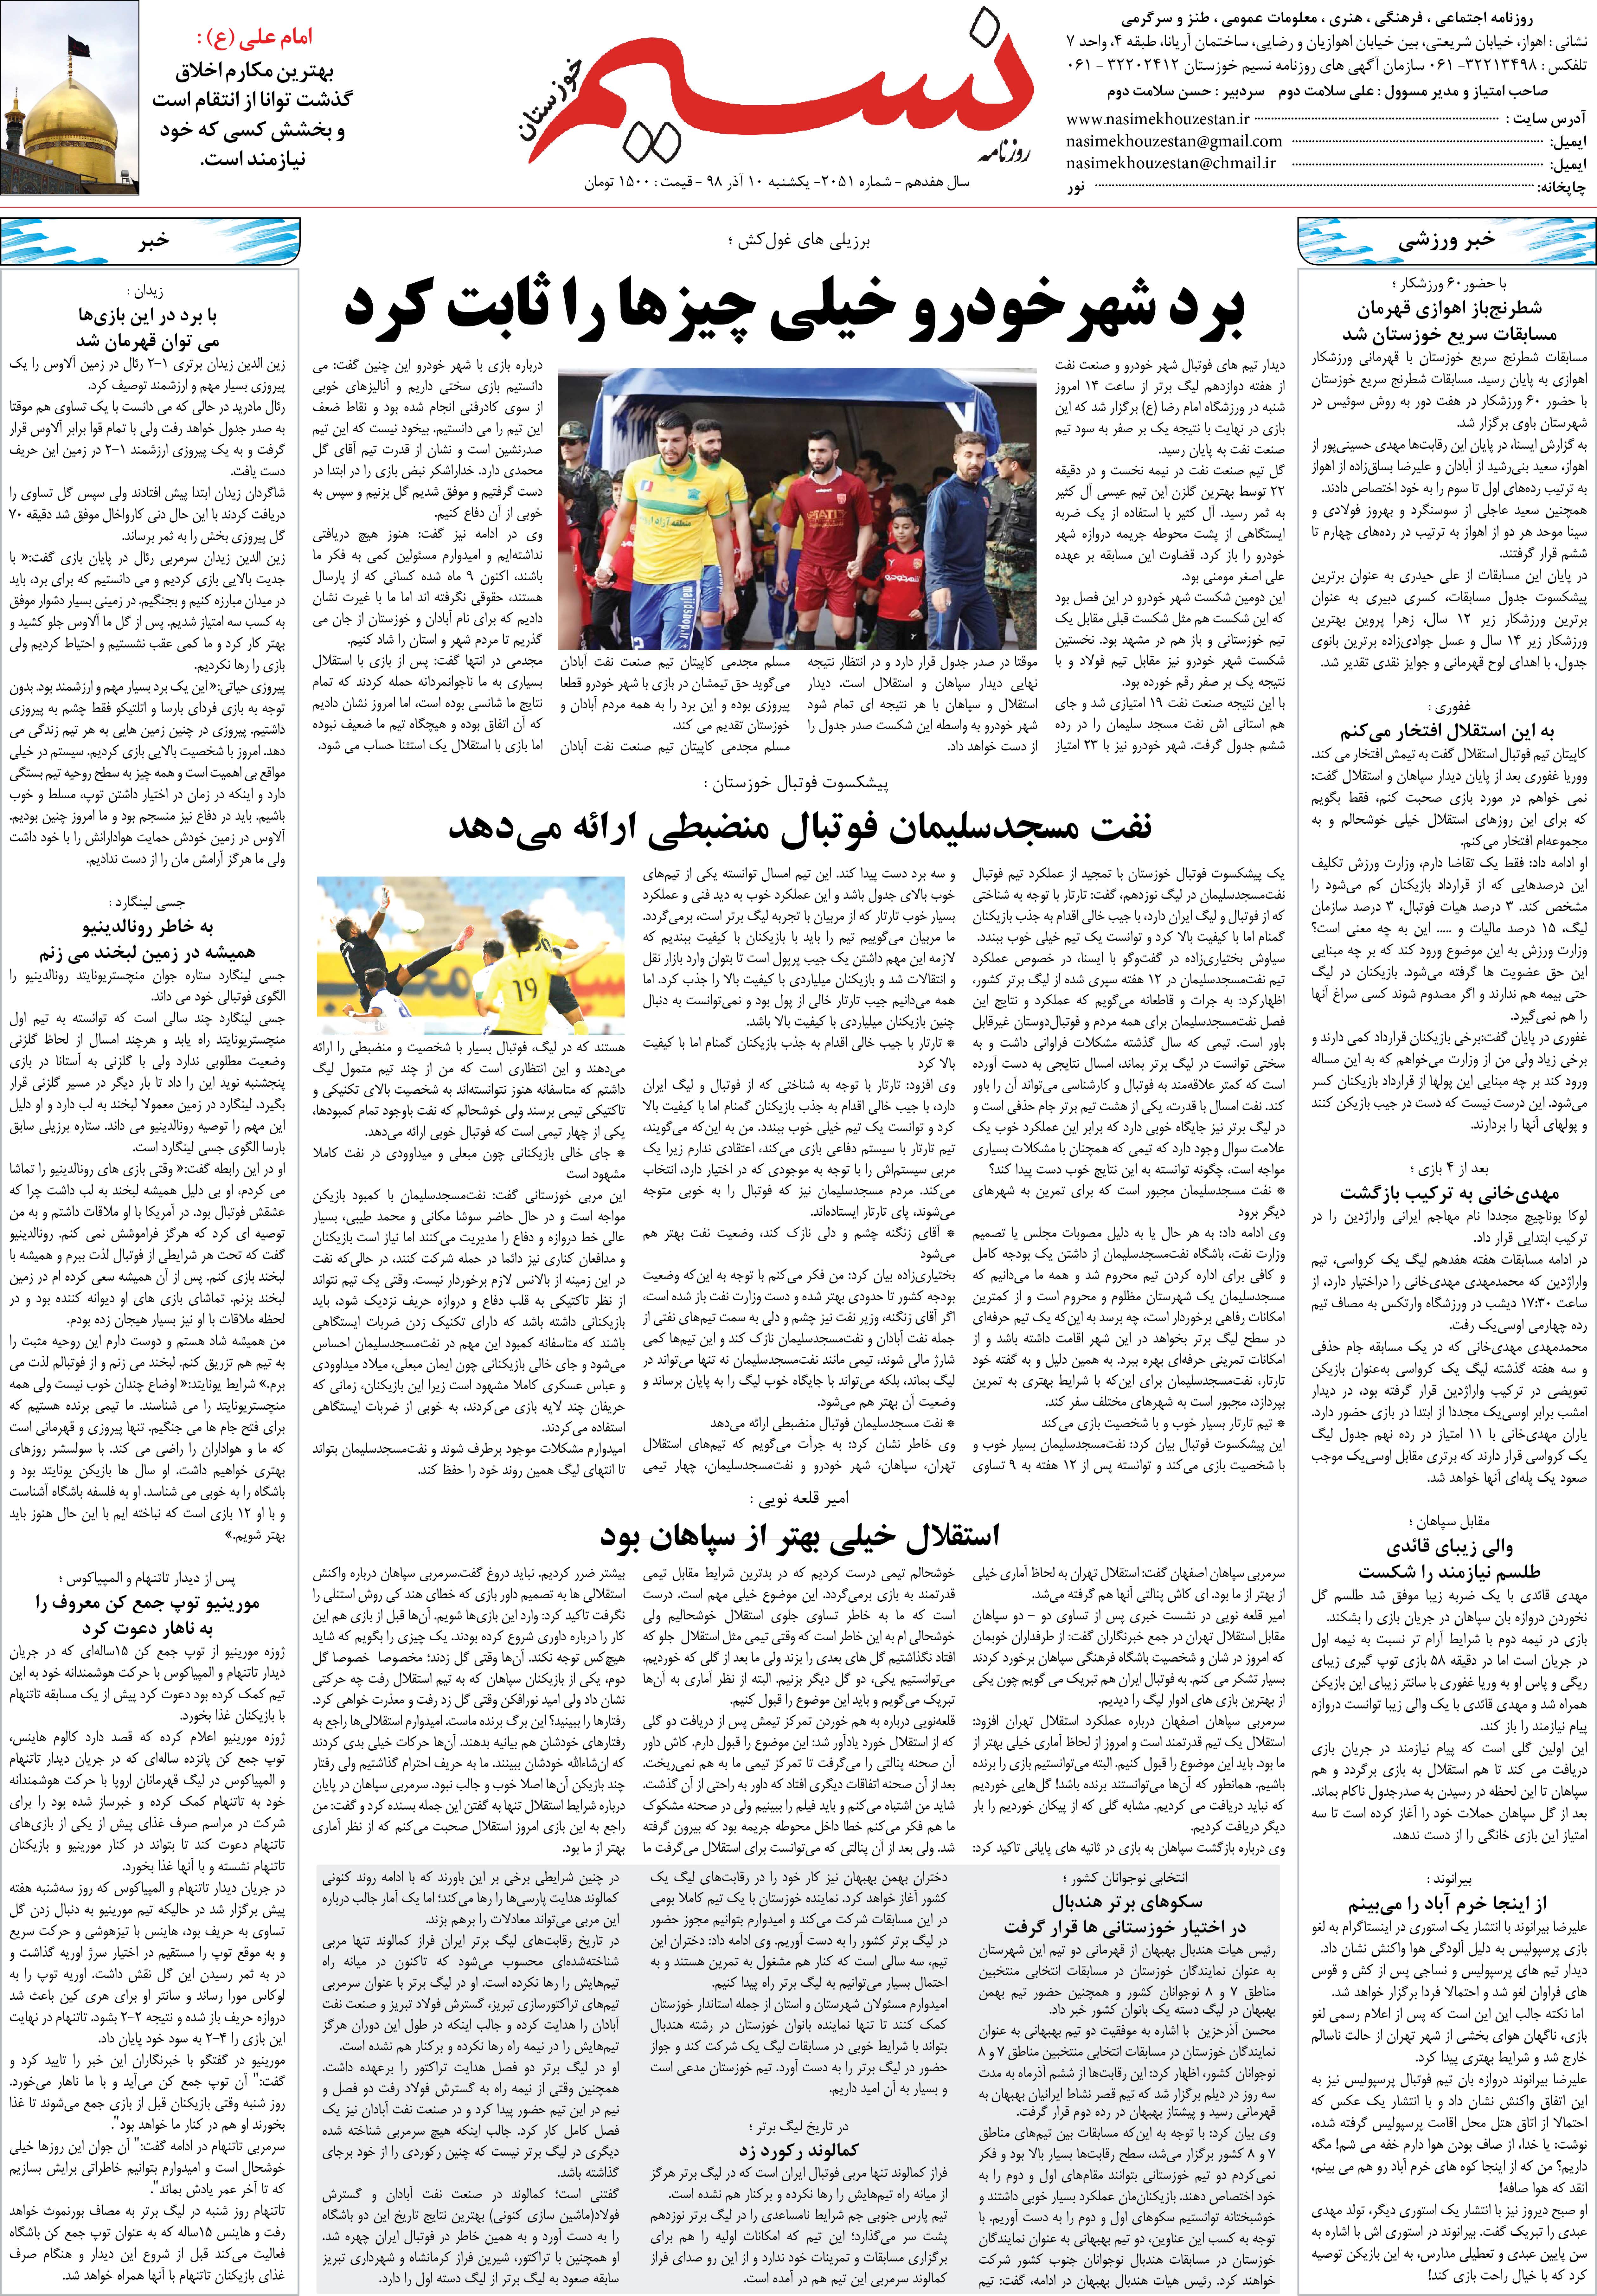 صفحه آخر روزنامه نسیم شماره 2051